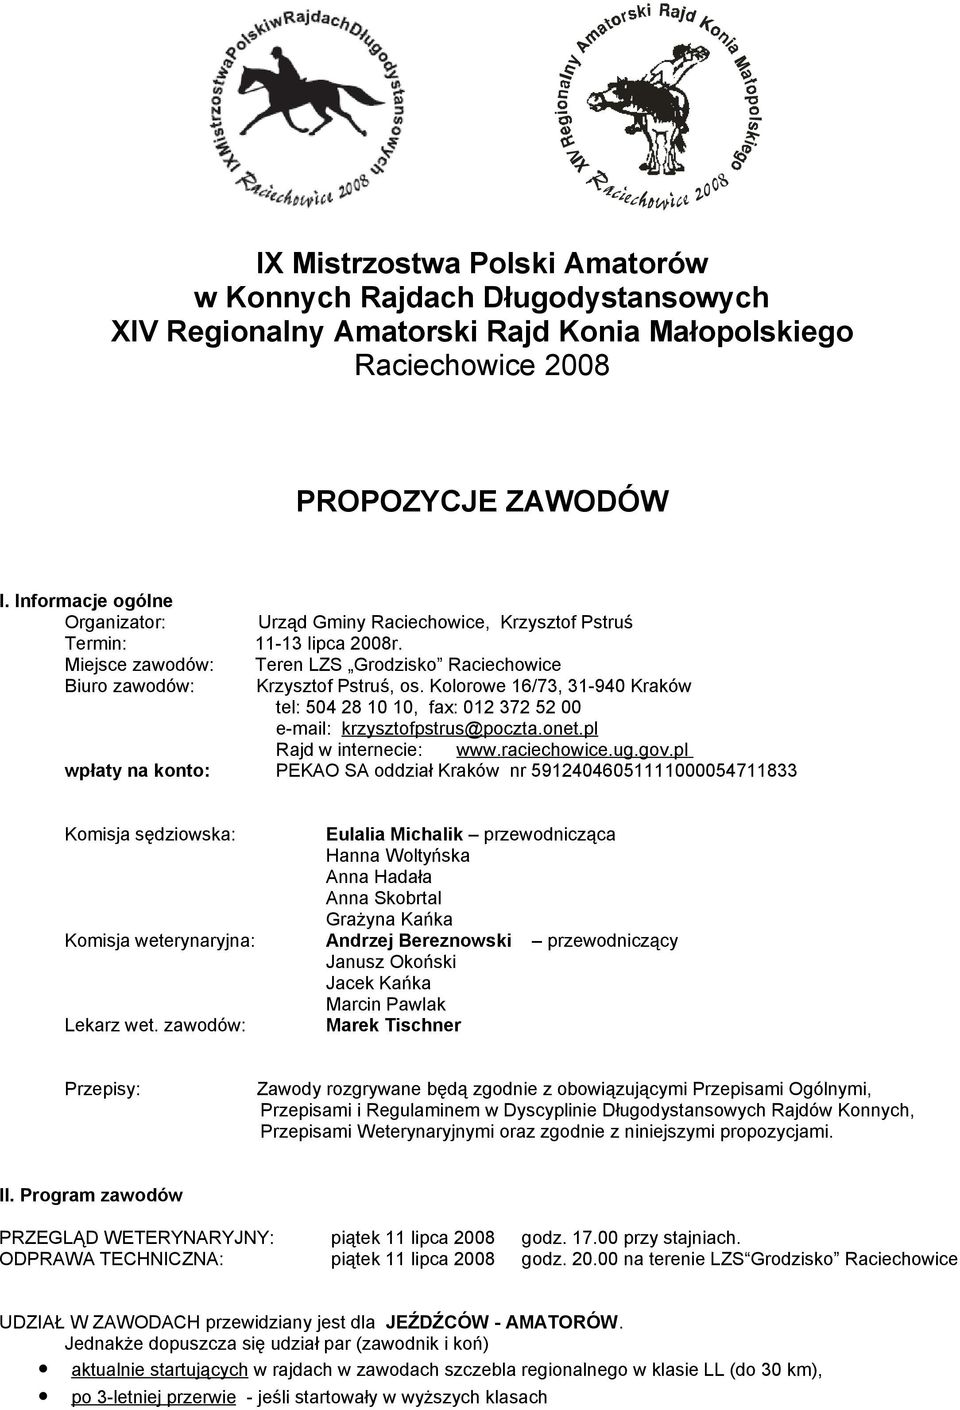 Kolorowe 16/73, 31-940 Kraków tel: 504 28 10 10, fax: 012 372 52 00 e-mail: krzysztofpstrus@poczta.onet.pl Rajd w internecie: www.raciechowice.ug.gov.